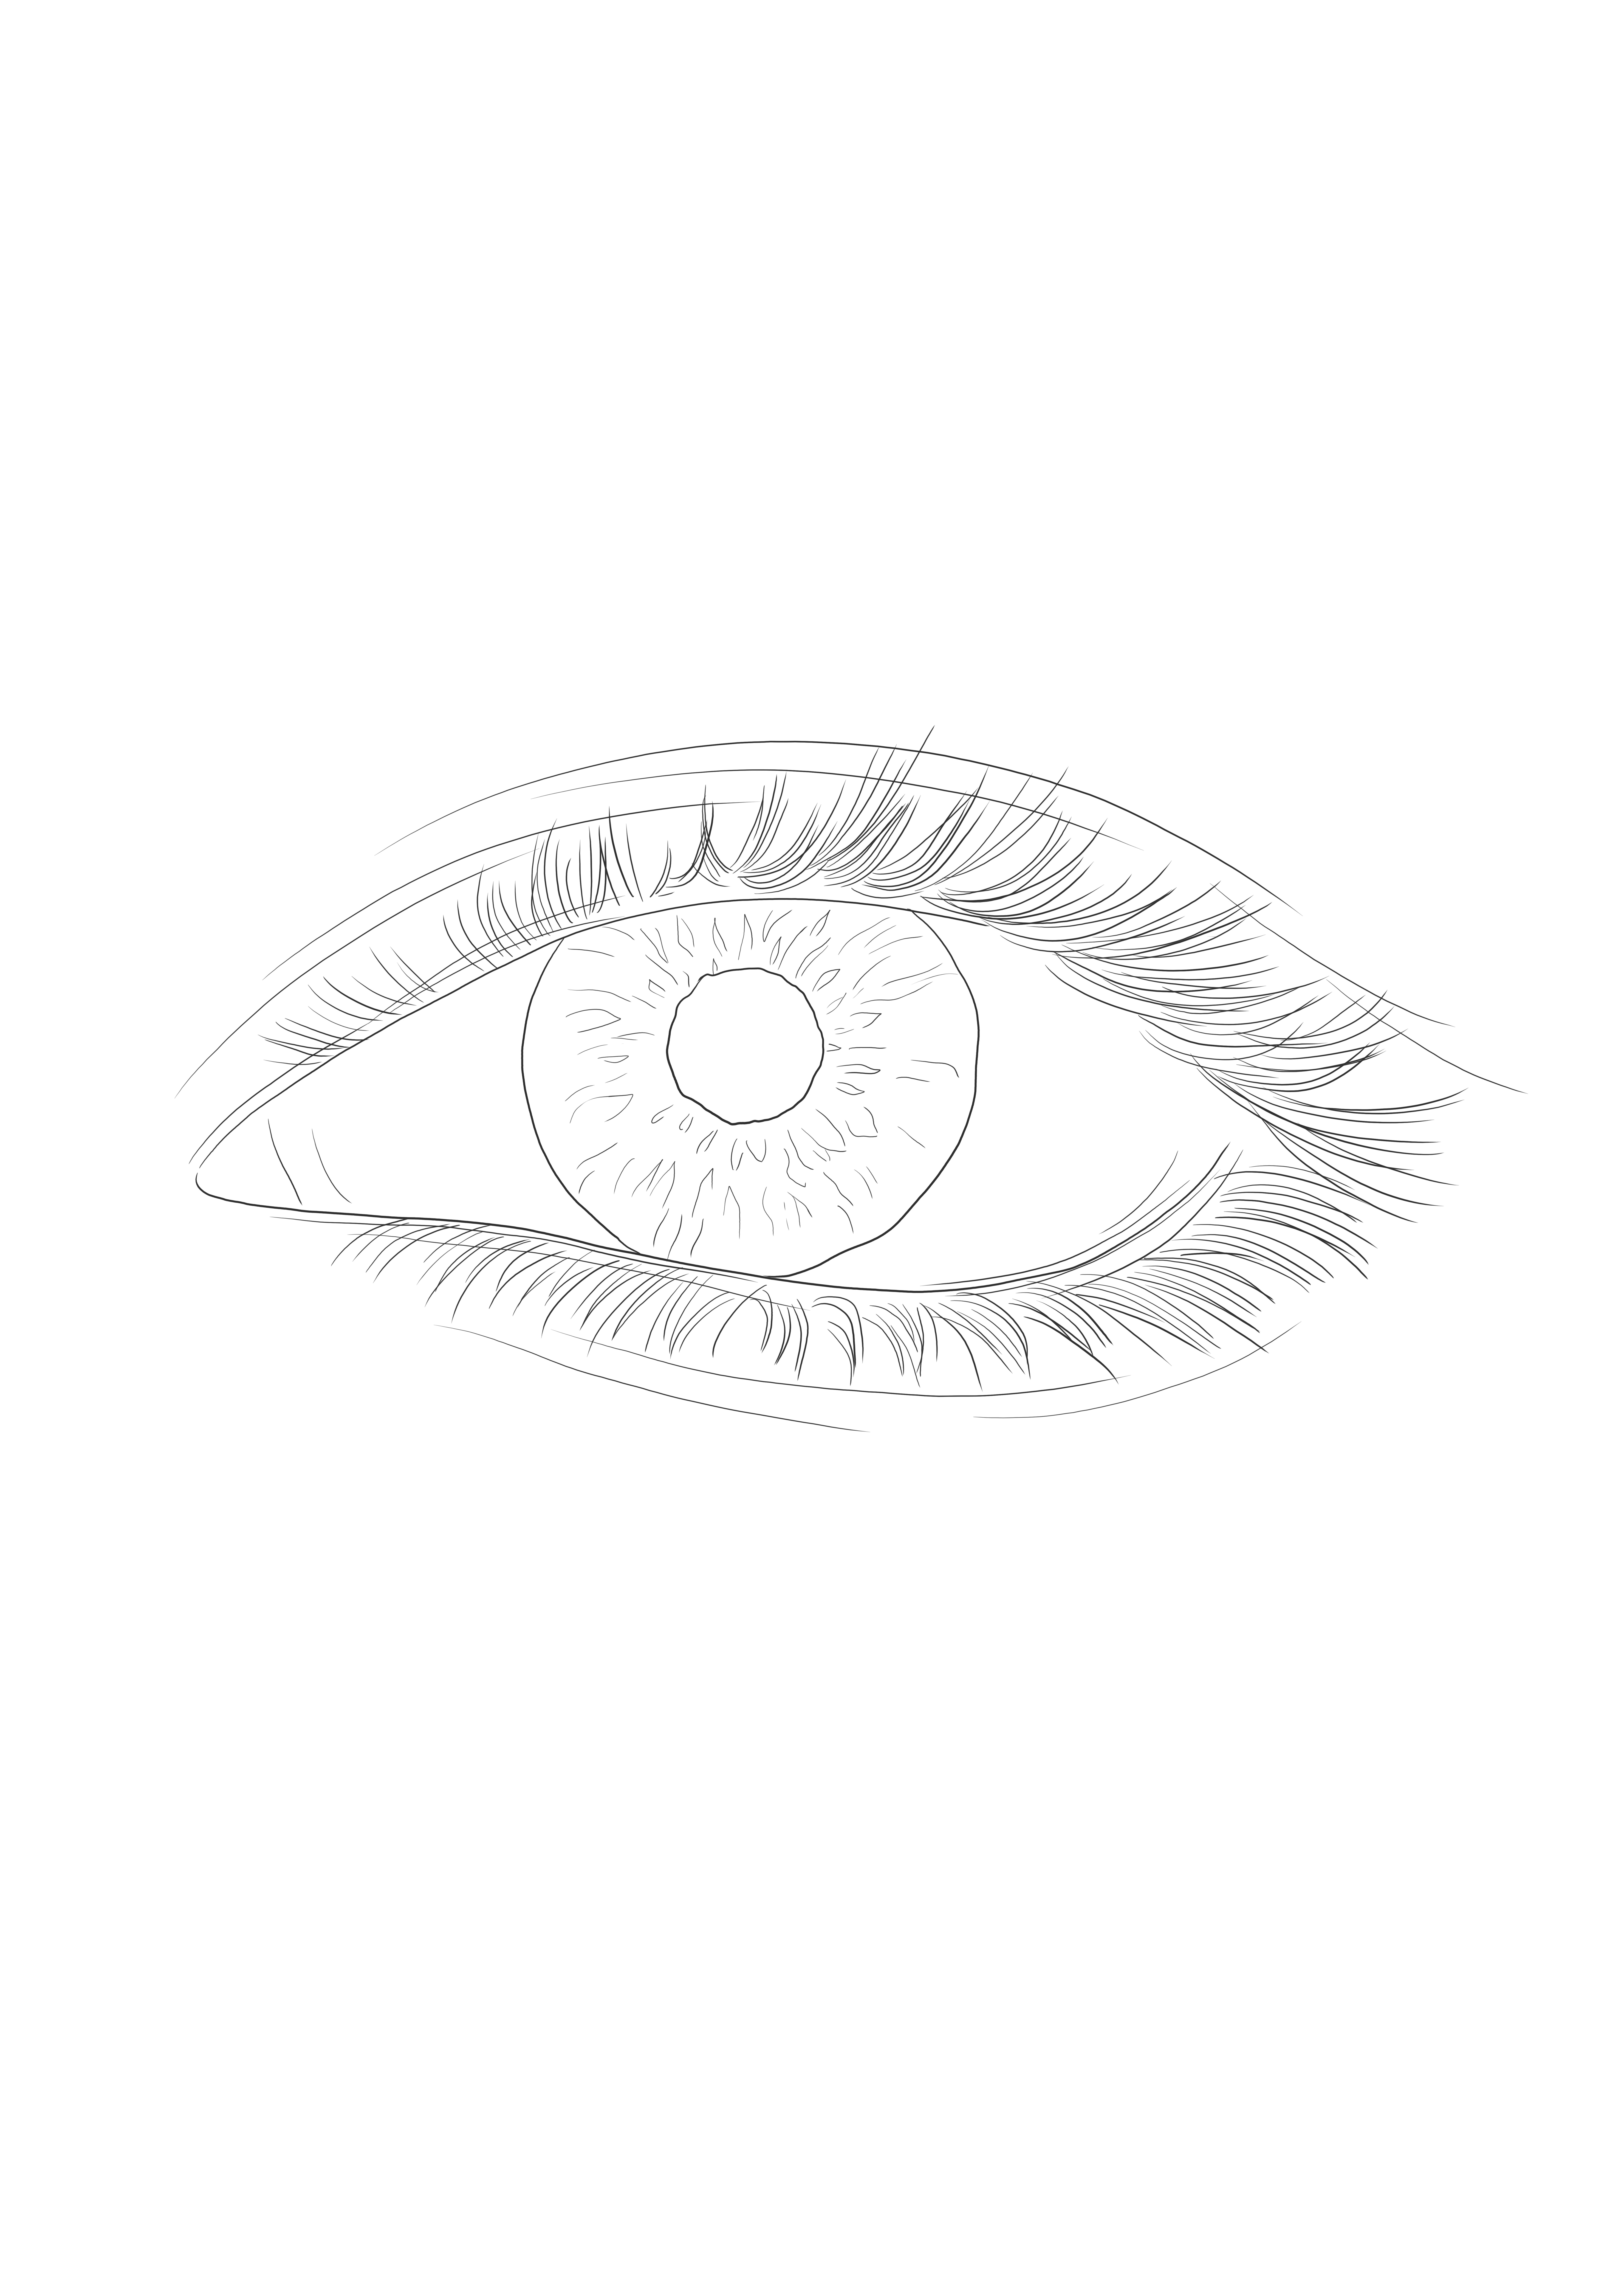 Malen Sie das Augenzwiebelblatt aus, um mehr über den menschlichen Körper zu erfahren